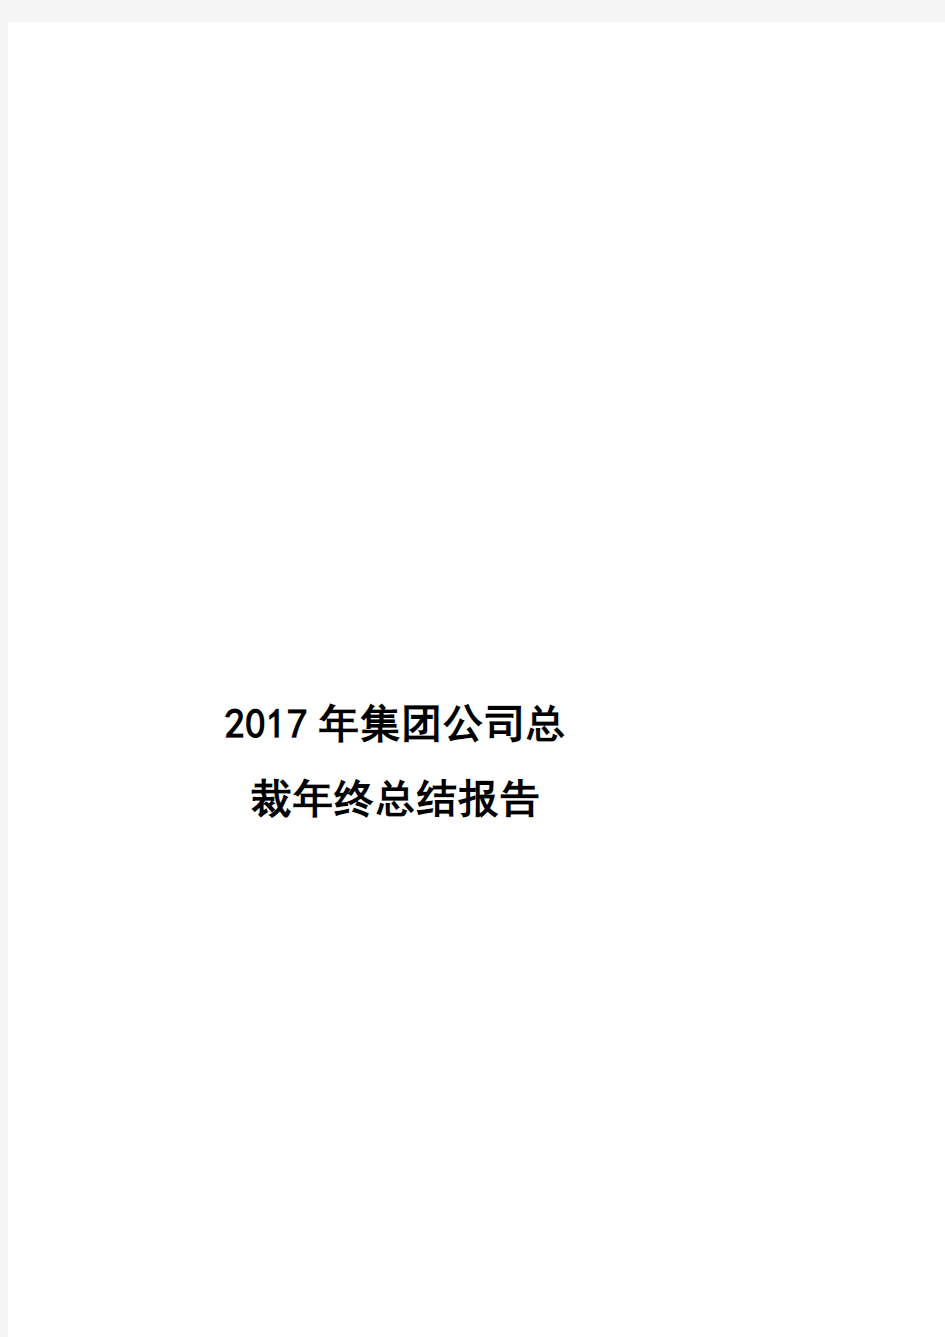 2017年集团公司总裁年终总结报告